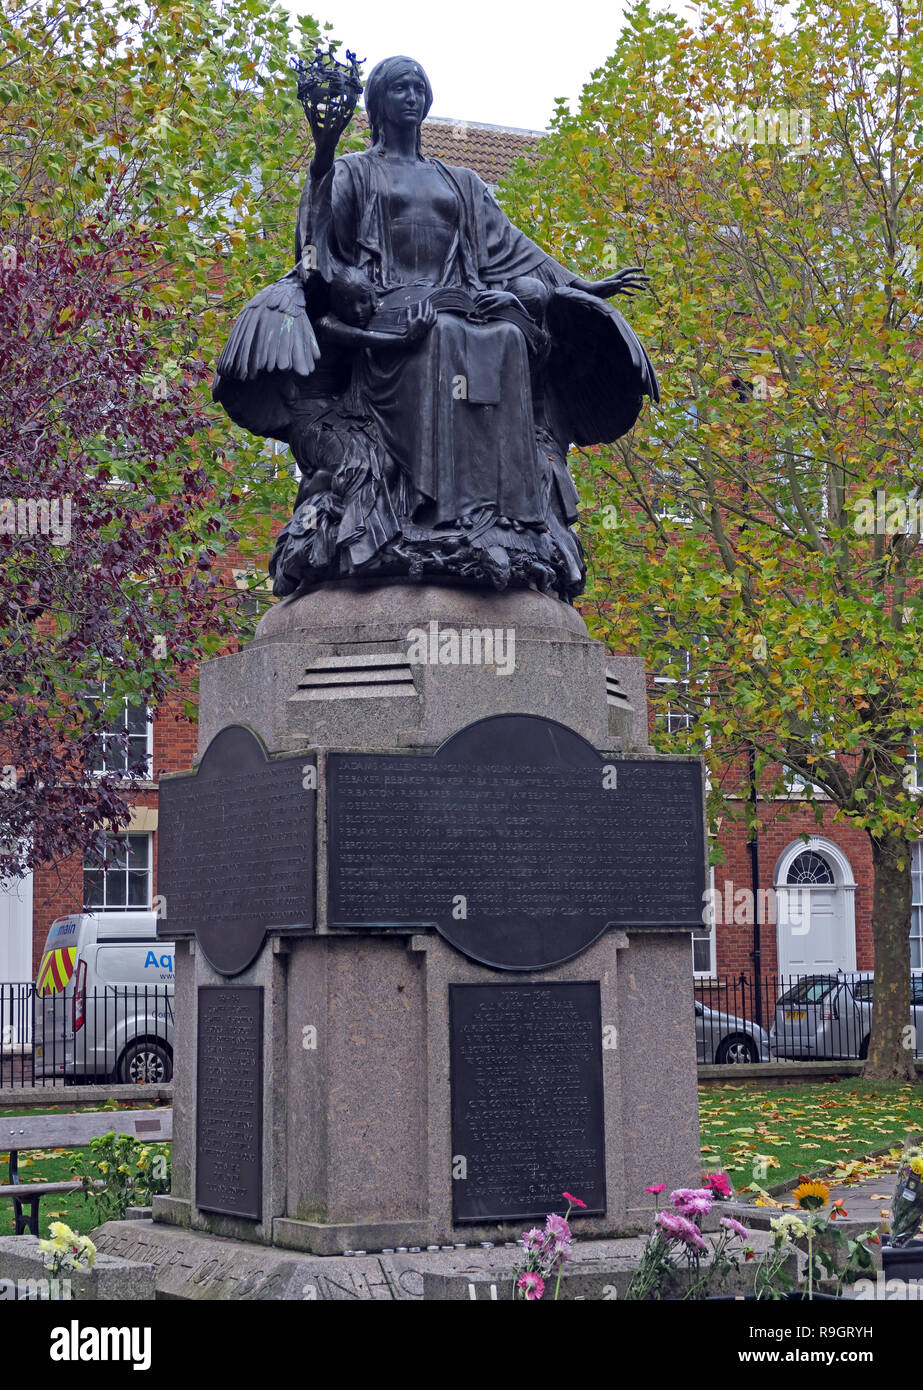 L'Ange de Bridgwater, 'civilisation en tant que femme", Bridgwater War Memorial de King Square, Bridgwater, Somerset , Afrique du Sud-Ouest de l'Angleterre, Royaume-Uni Banque D'Images